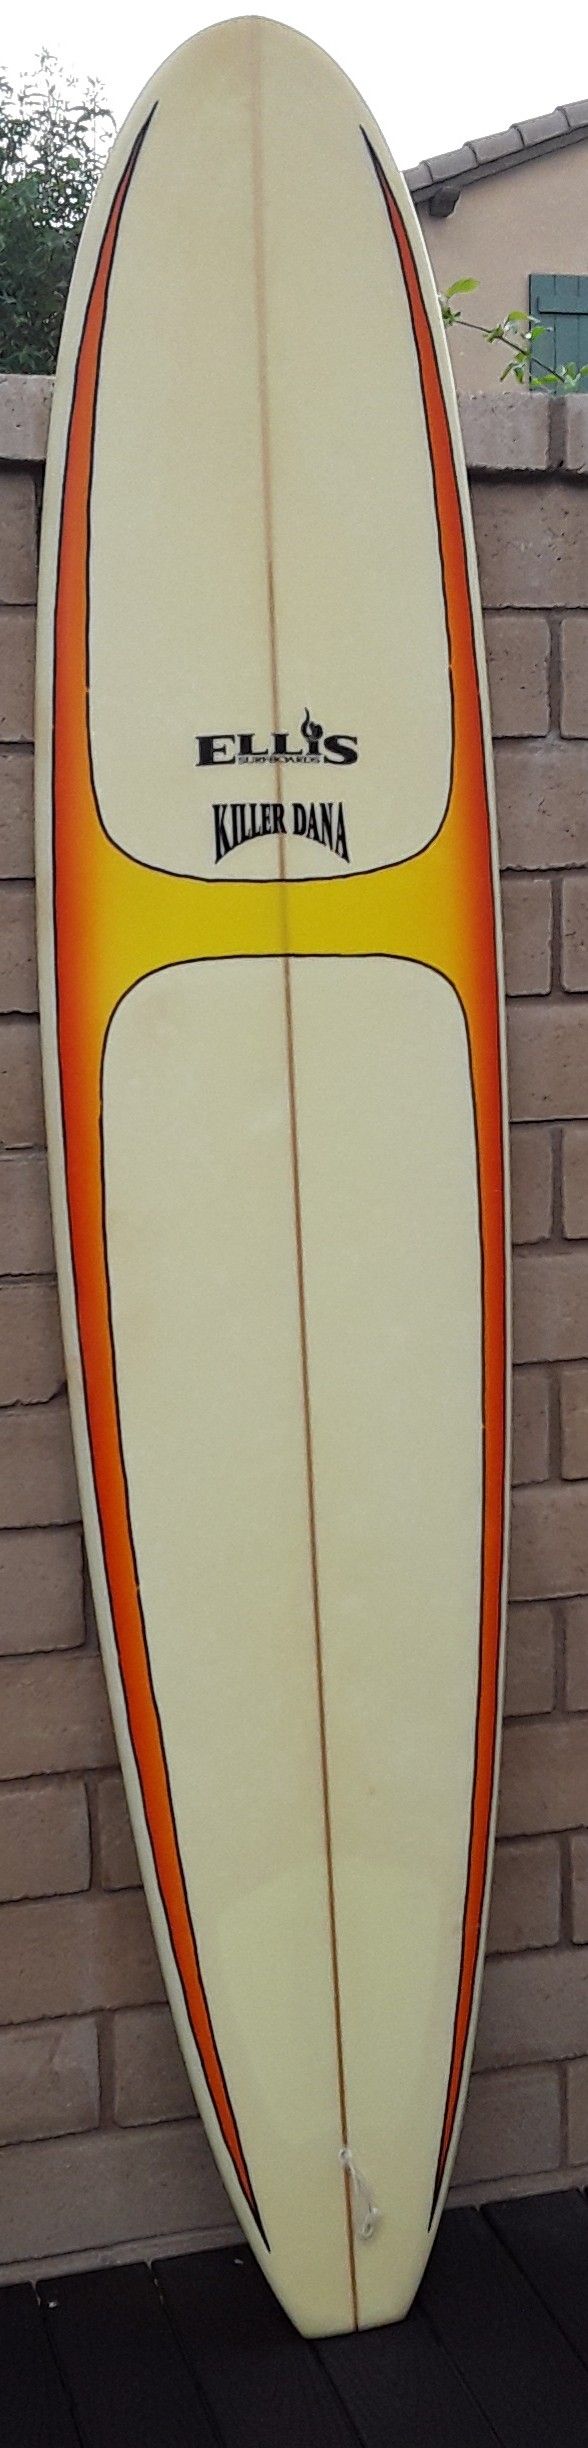 Surfboard 8'8. Killer Dana. Funboard long board